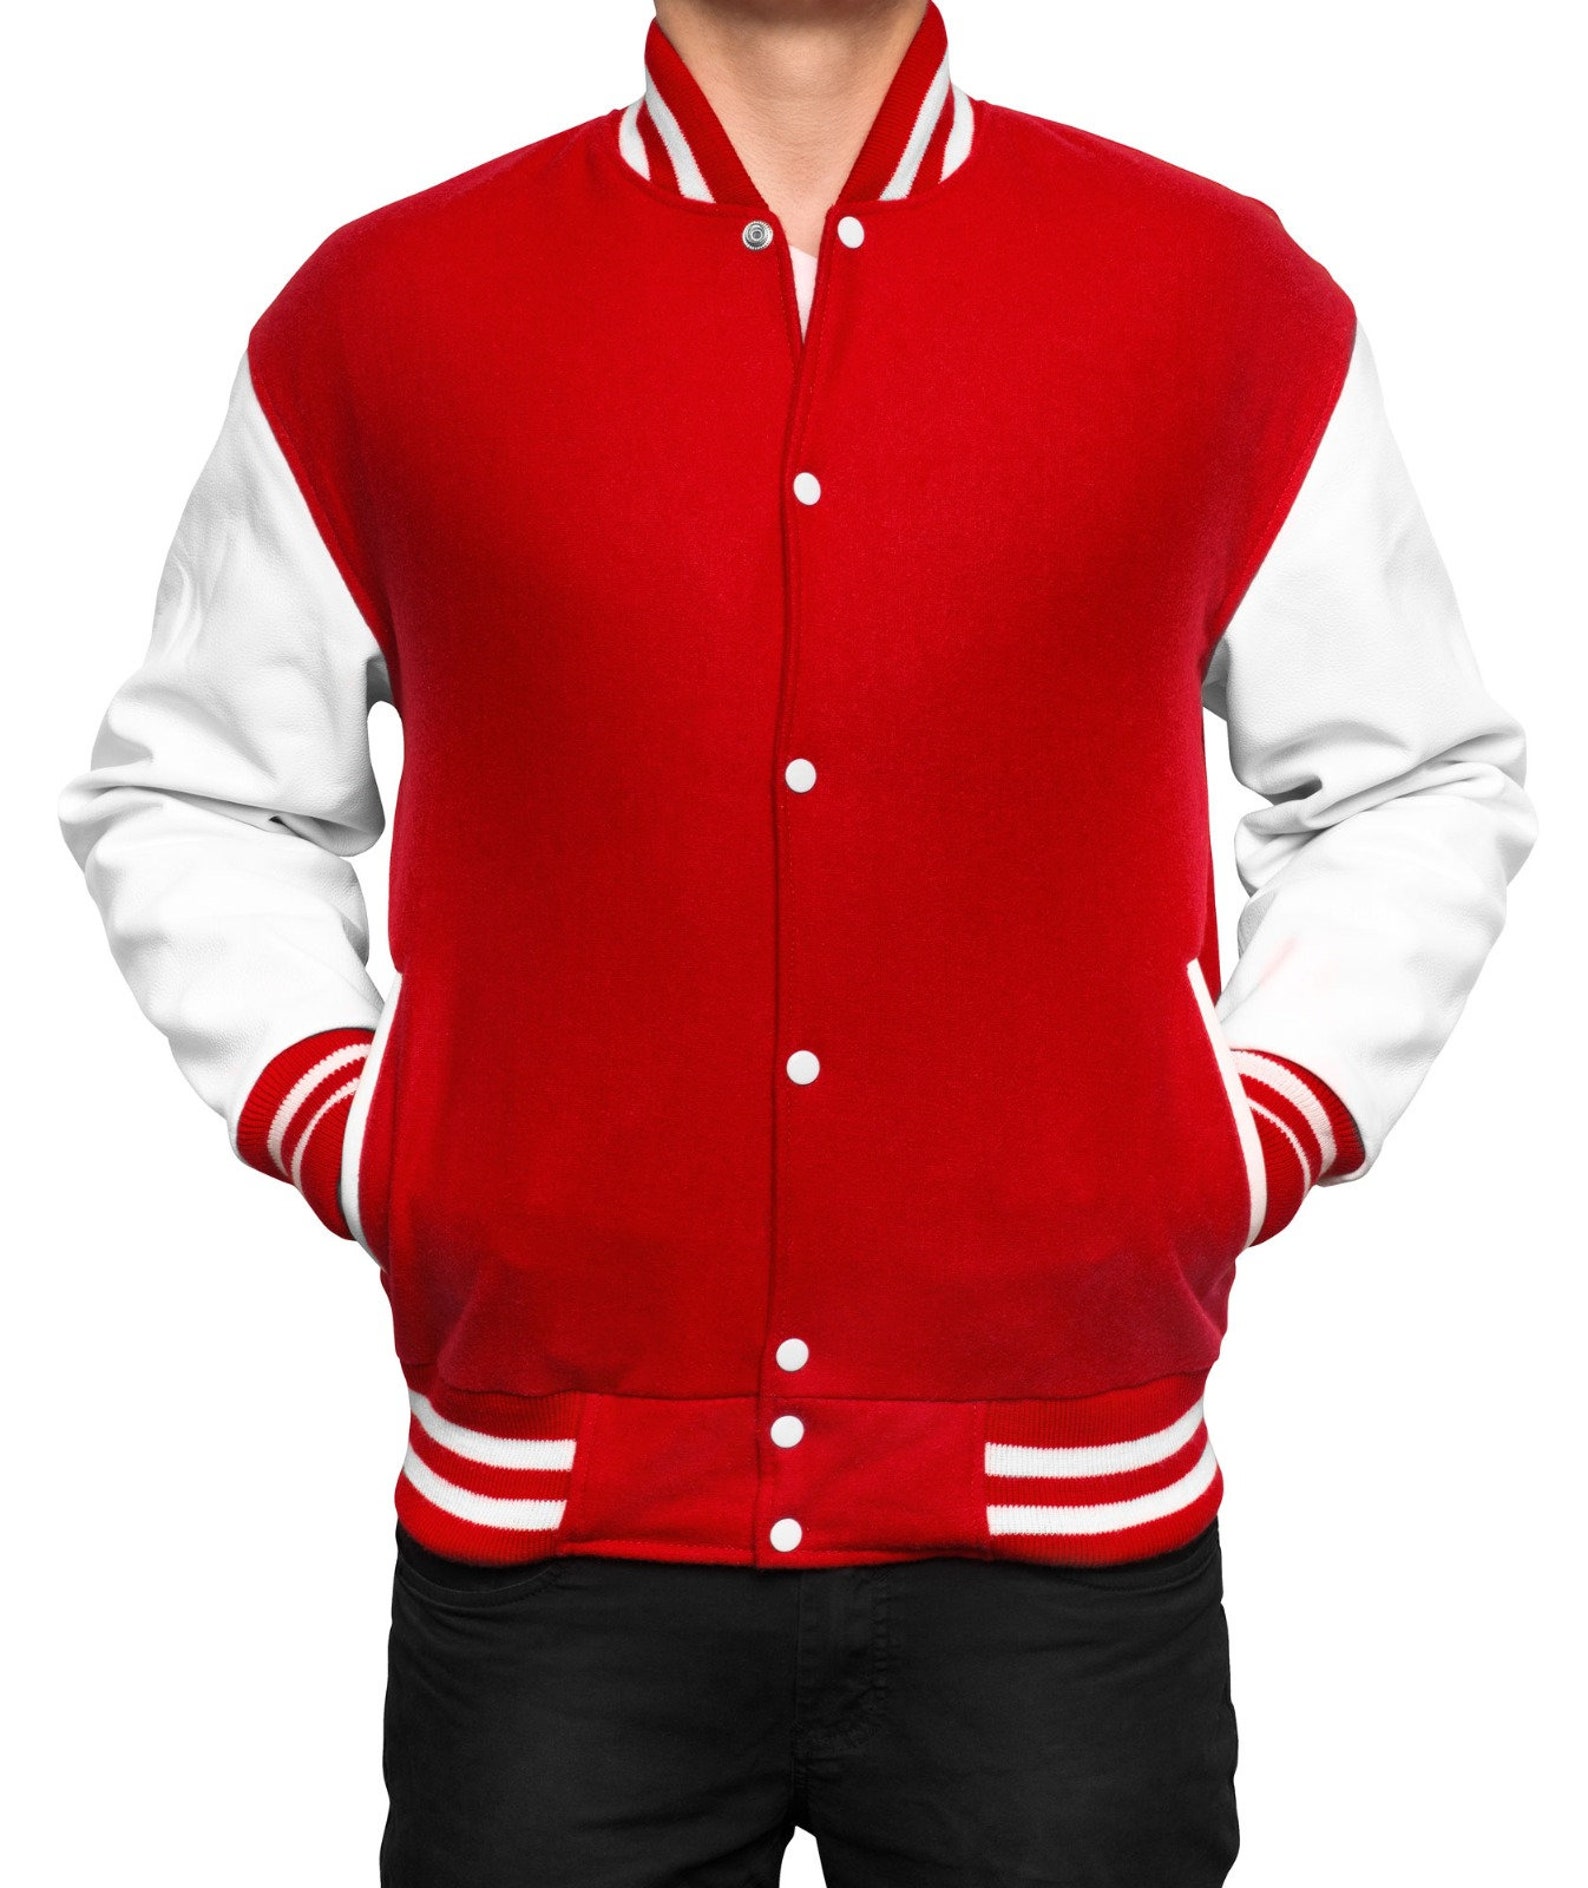 Personalized Varsity Jacket Letterman Style Jacket available | Etsy